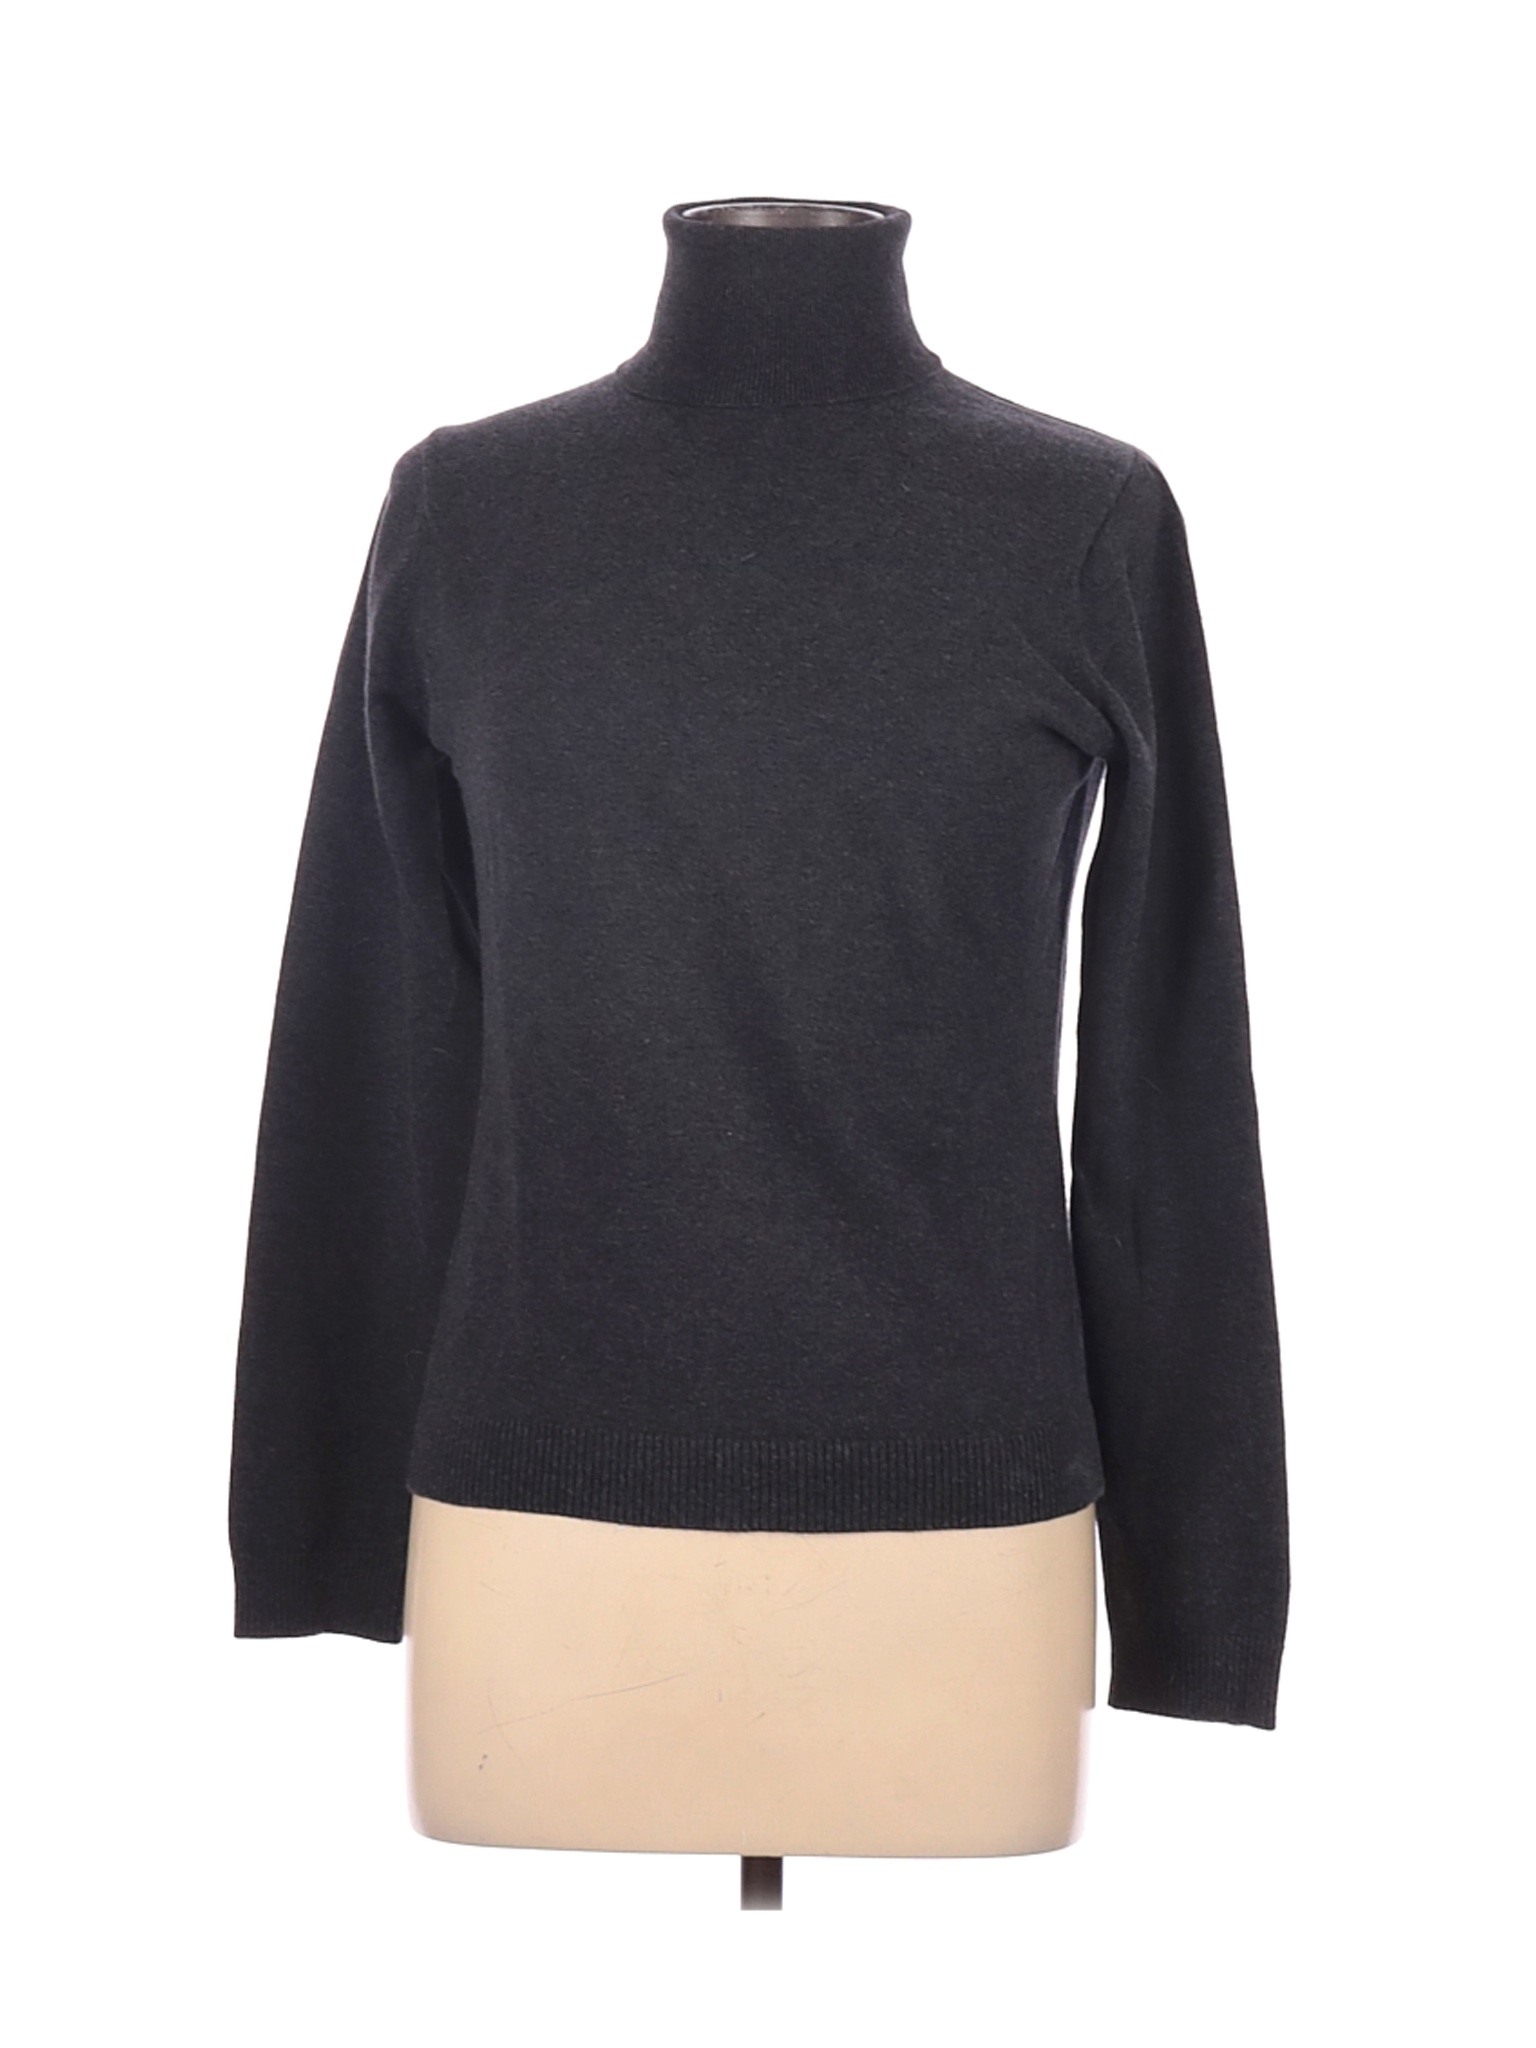 Gap Women Black Turtleneck Sweater L | eBay